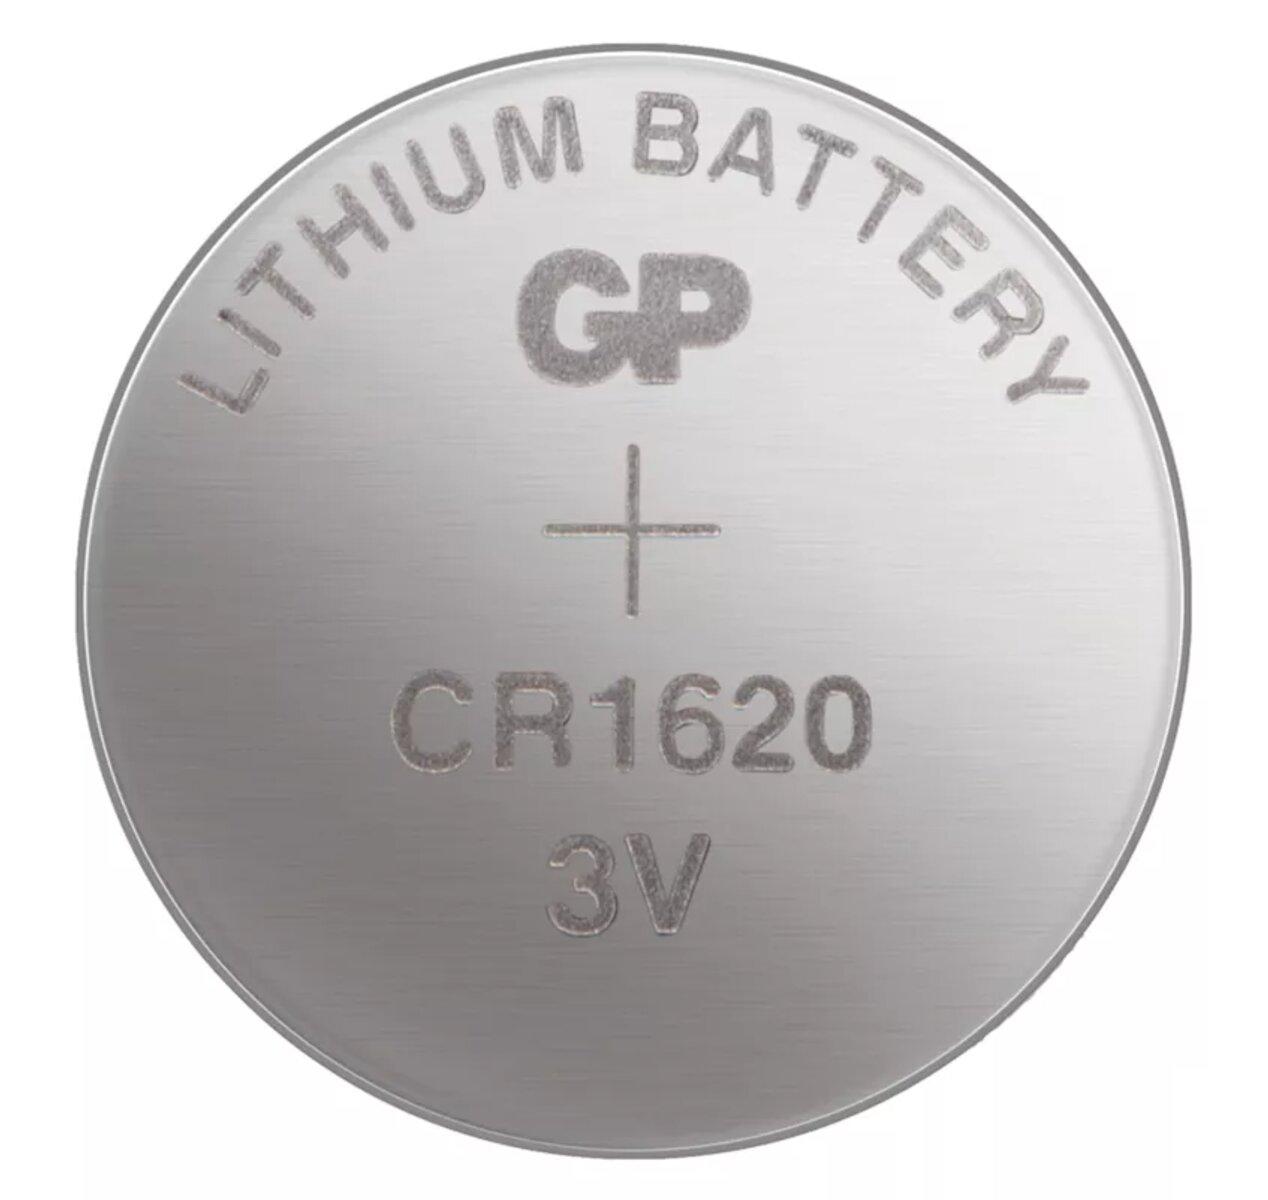 Batéria CR 1620 3V/75mAh GP B1570                                               